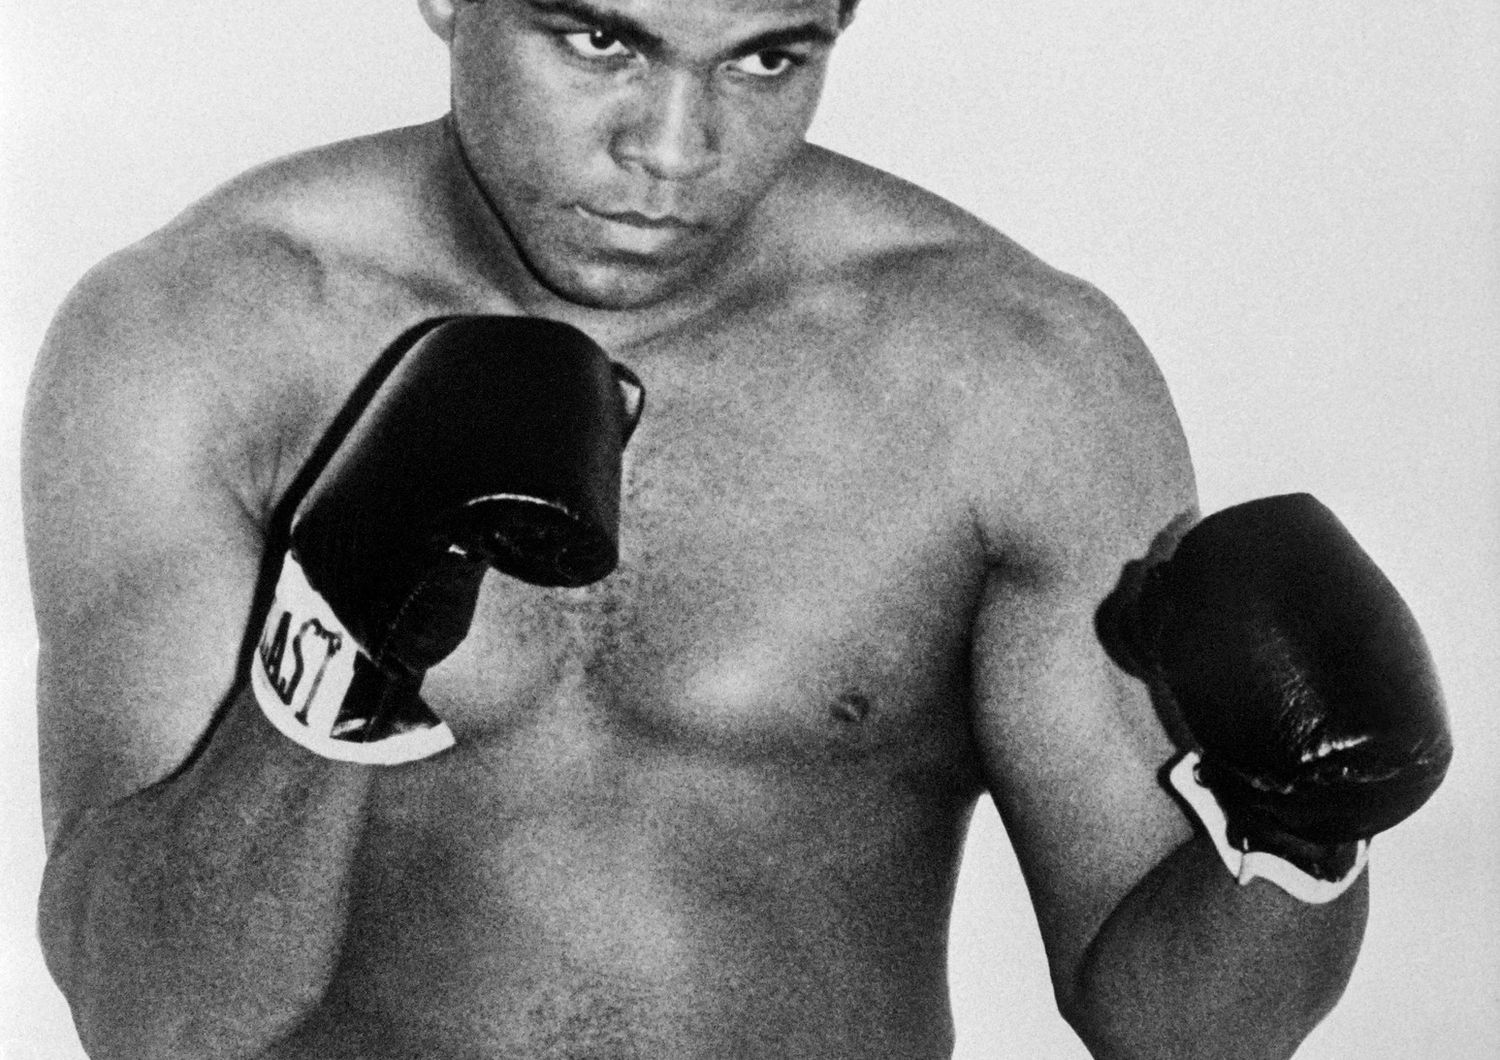 Muhammad Ali (Cassius Clay) &egrave; diventato campione olimpico dei pesi massimi nel 1960, poi campione del mondo dei pesi massimi per la prima volta nel febbraio 1964 contro Sonny Liston.  Muhammad Ali ha vinto la medaglia olimpica &nbsp;dei pesi massimi a Roma nel 1960, a 18 anni, e il titolo professionale mondiale dei pesi massimi per la prima volta nel febbraio 1964 contro Sonny Liston&nbsp;